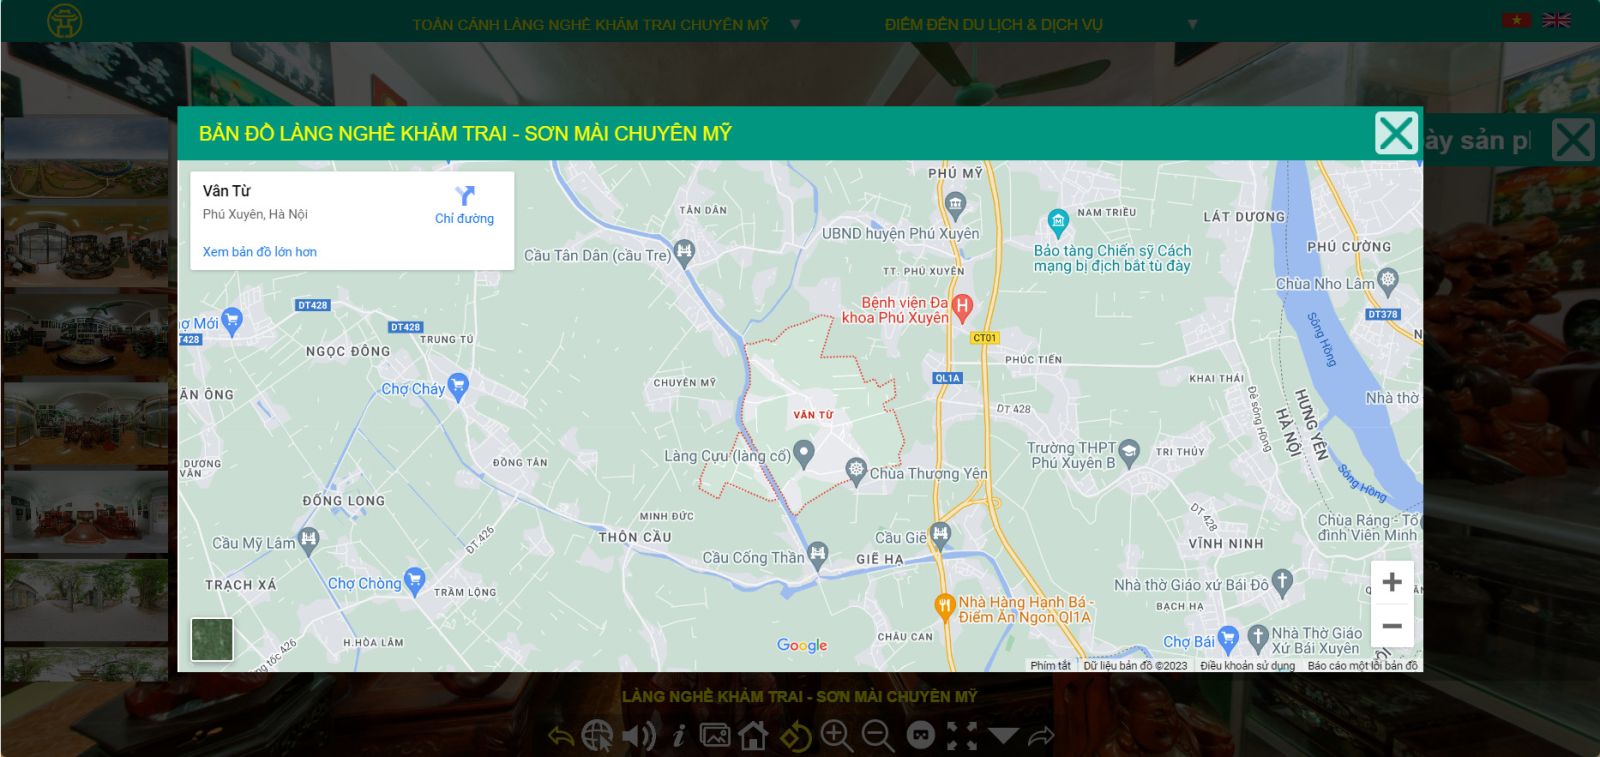 Tích hợp vị trí trên Google Maps giúp du khách dễ dàng hình dung vị trí khu làng nghề